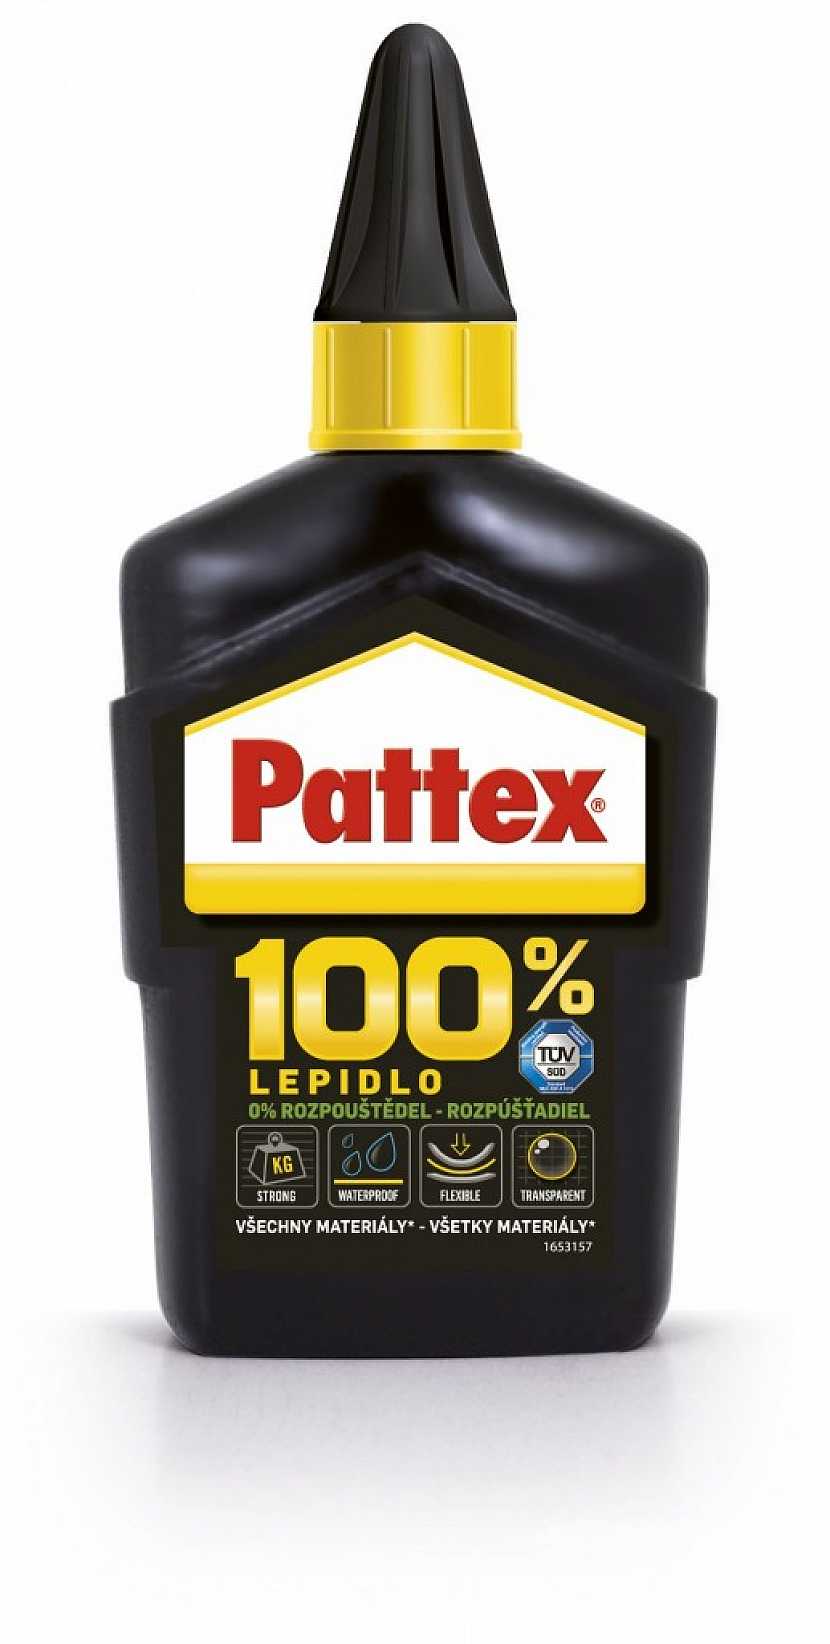 Výhody univerzálního lepidla Pattex 100%